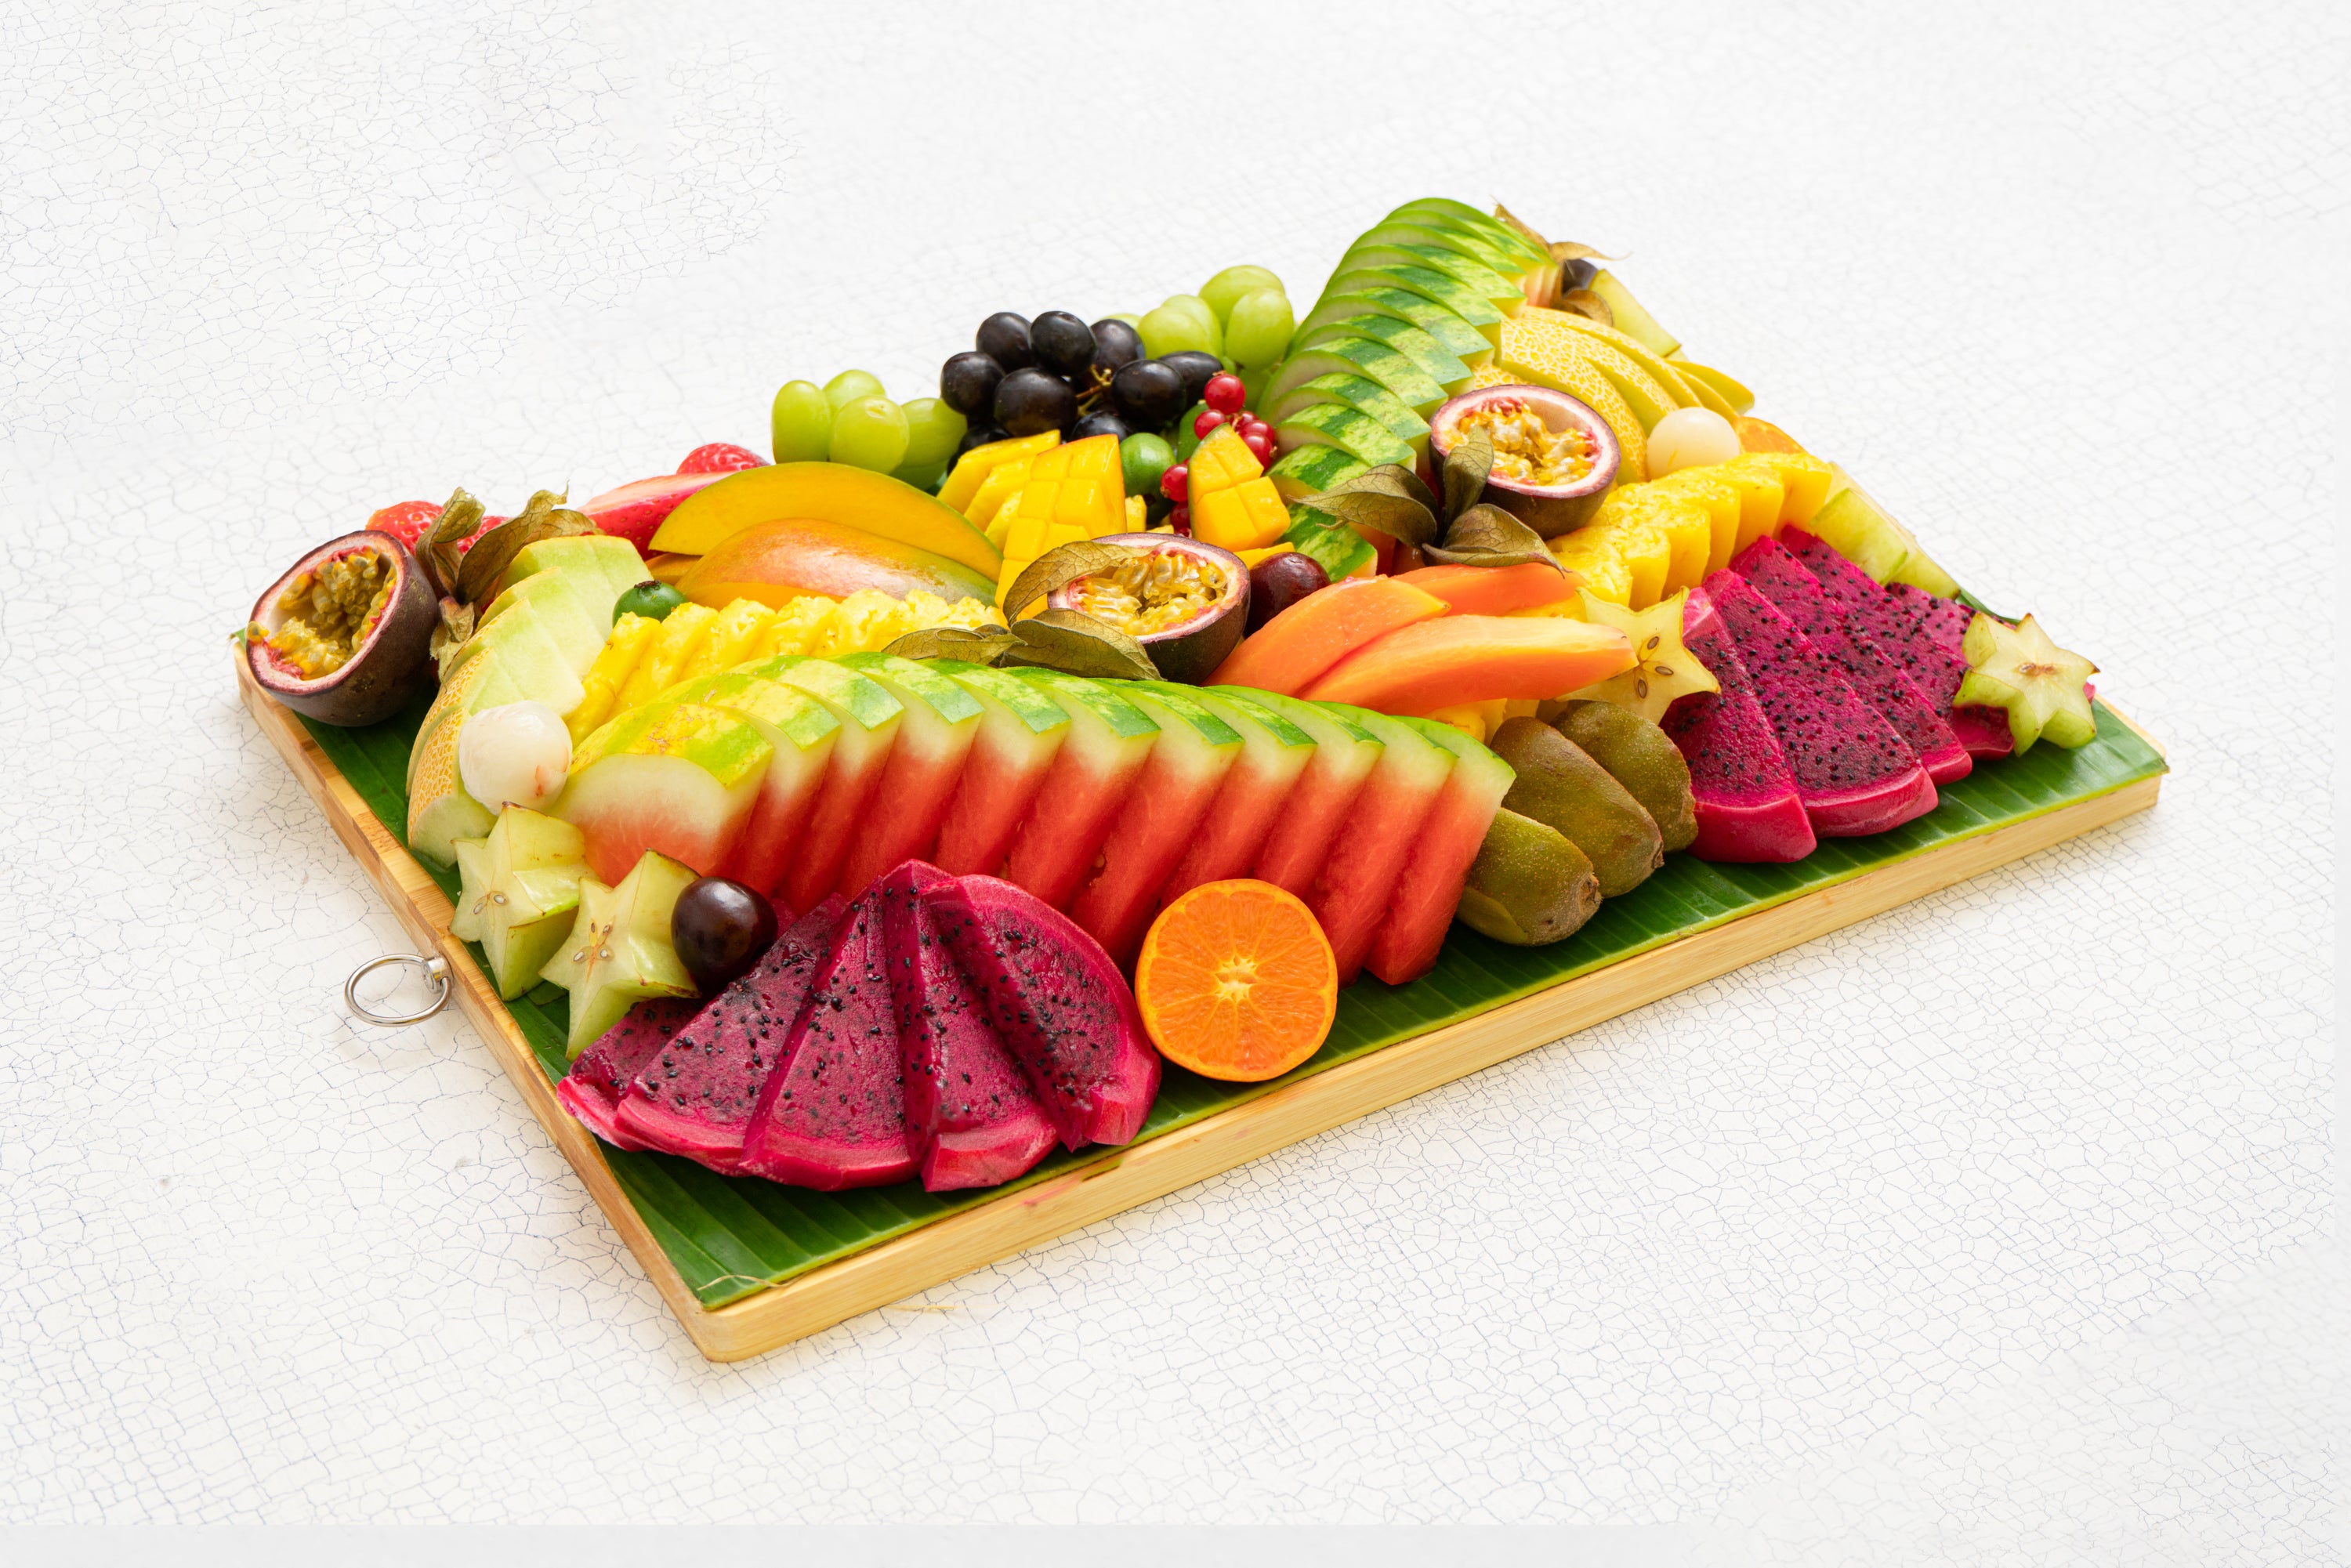 Fruit Platter on wooden board (serves approx 10-14 people)